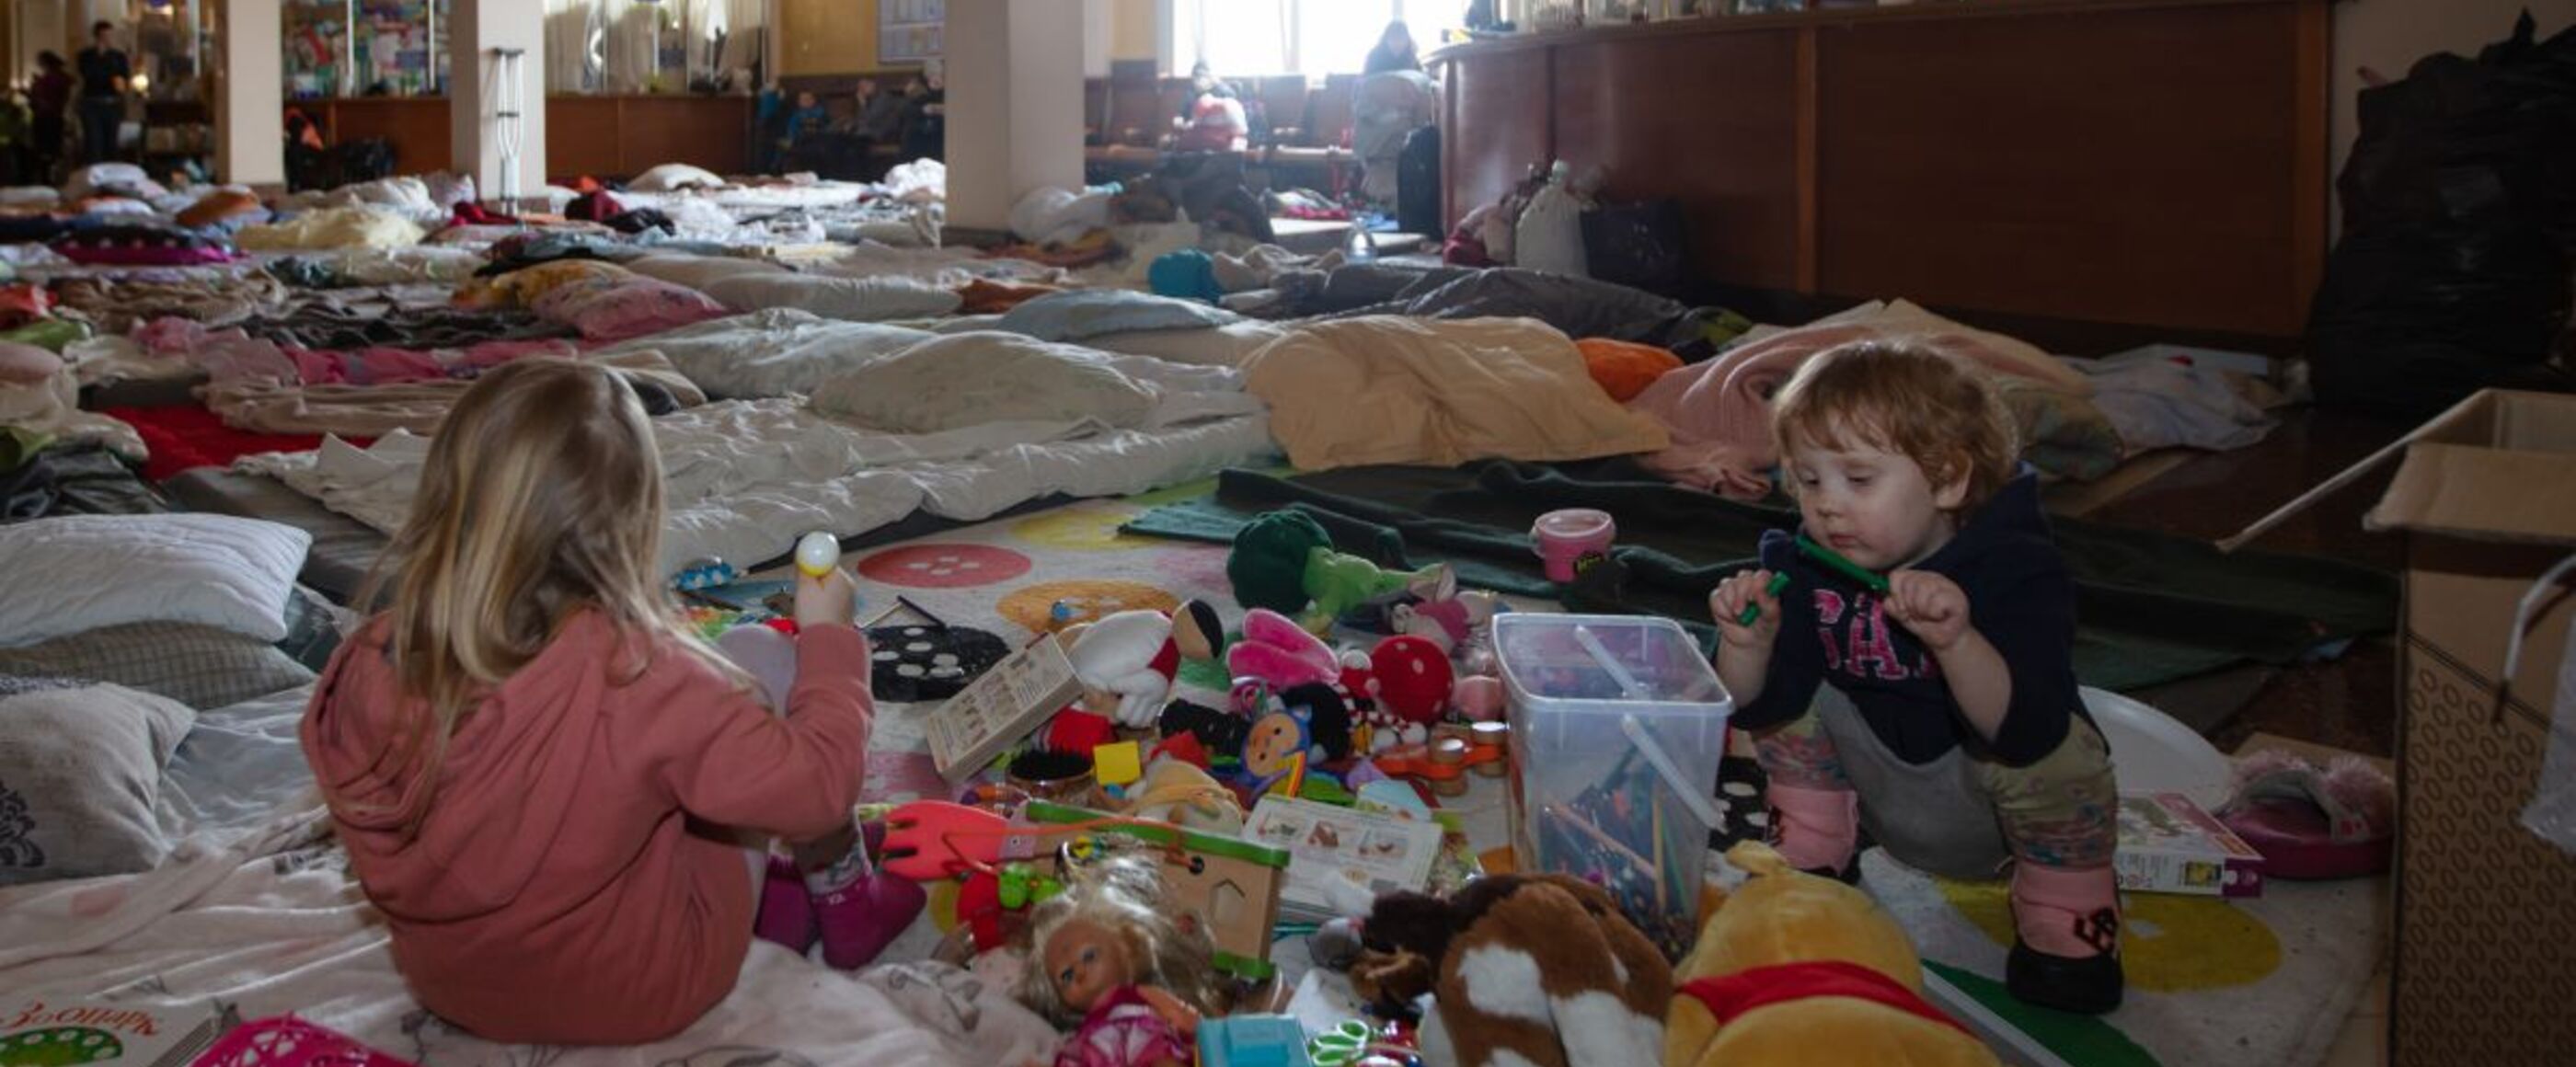 In einem Raum liegen Decken über den ganzen Boden, Kinder spielen mit Kuscheltieren und anderen Spielsachen darauf.